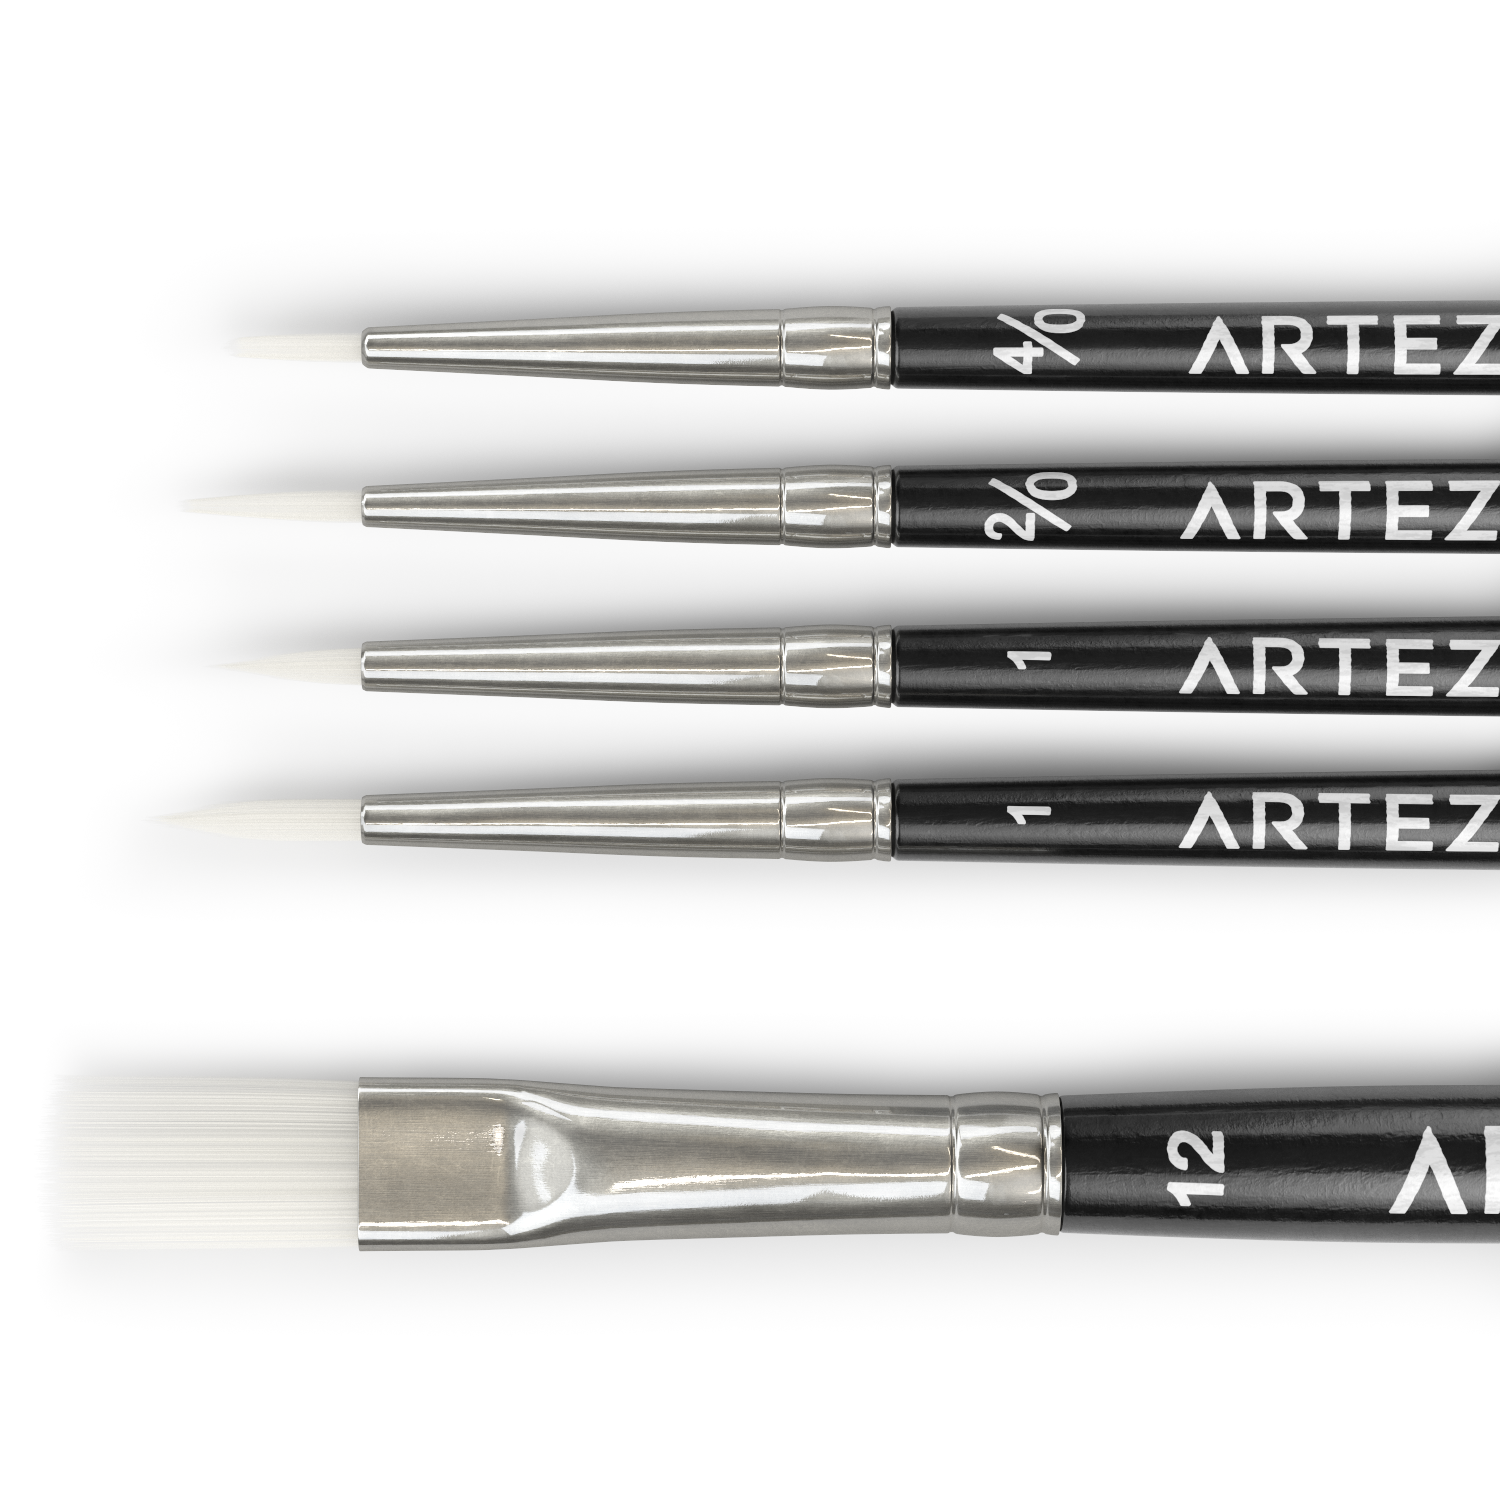 Trekell Acrylic Brush Set - Professional Brushes for Acrylic Painting